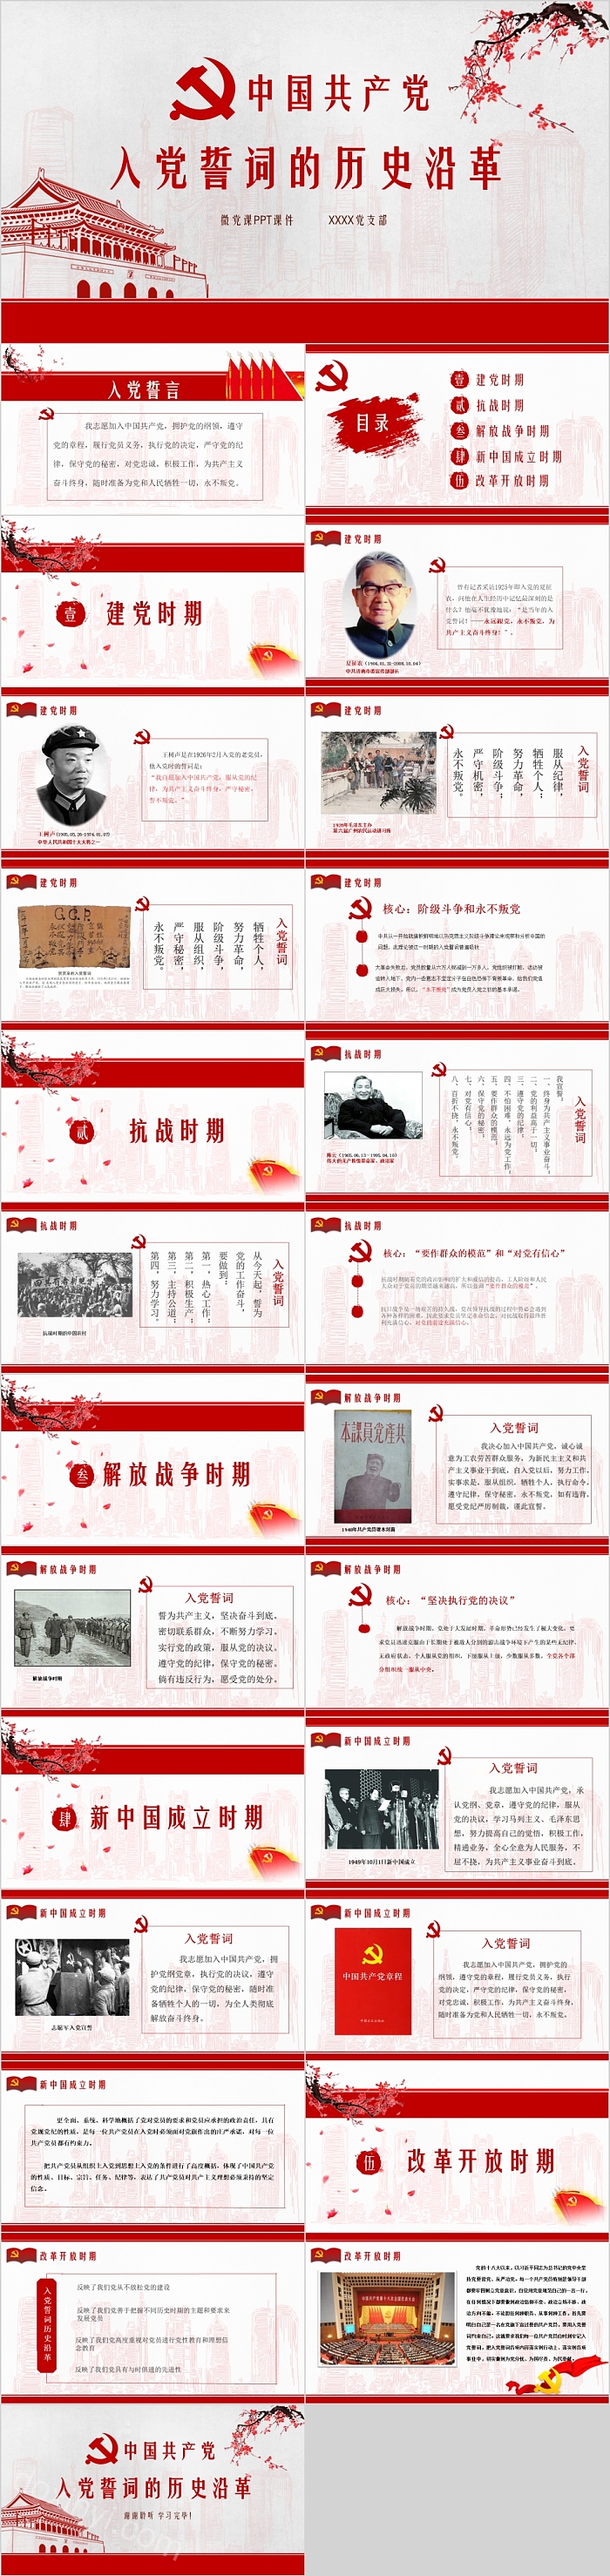 中国共产党入党誓词的历史沿革